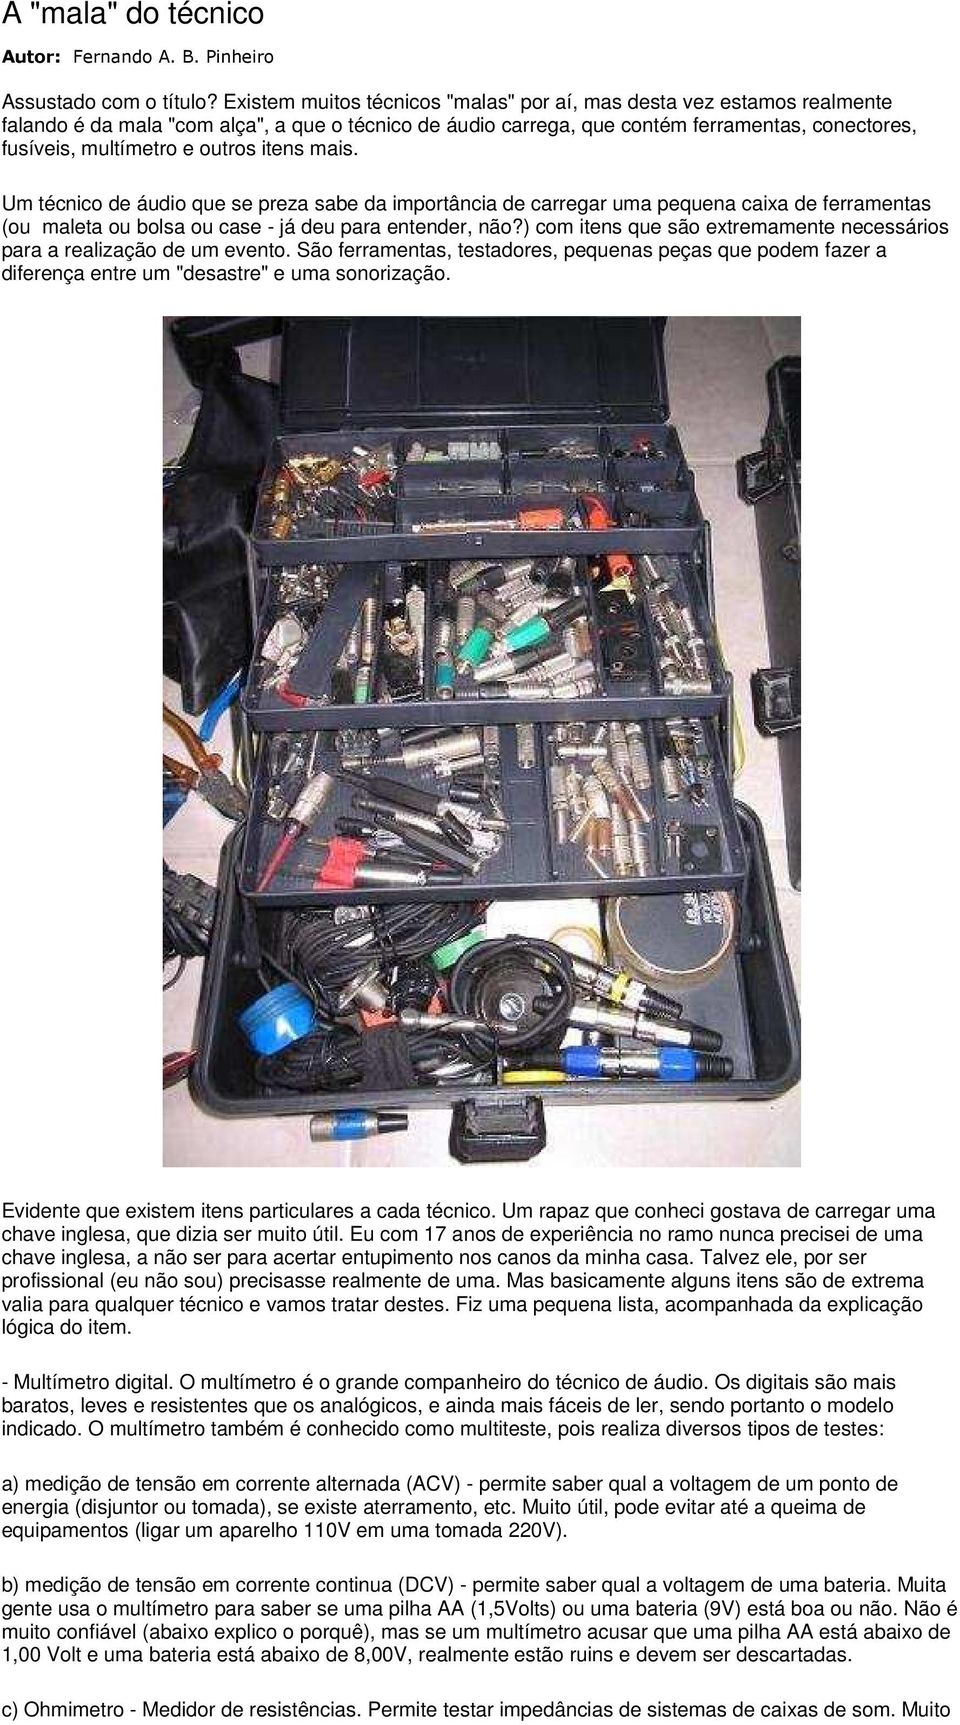 outros itens mais. Um técnico de áudio que se preza sabe da importância de carregar uma pequena caixa de ferramentas (ou maleta ou bolsa ou case - já deu para entender, não?